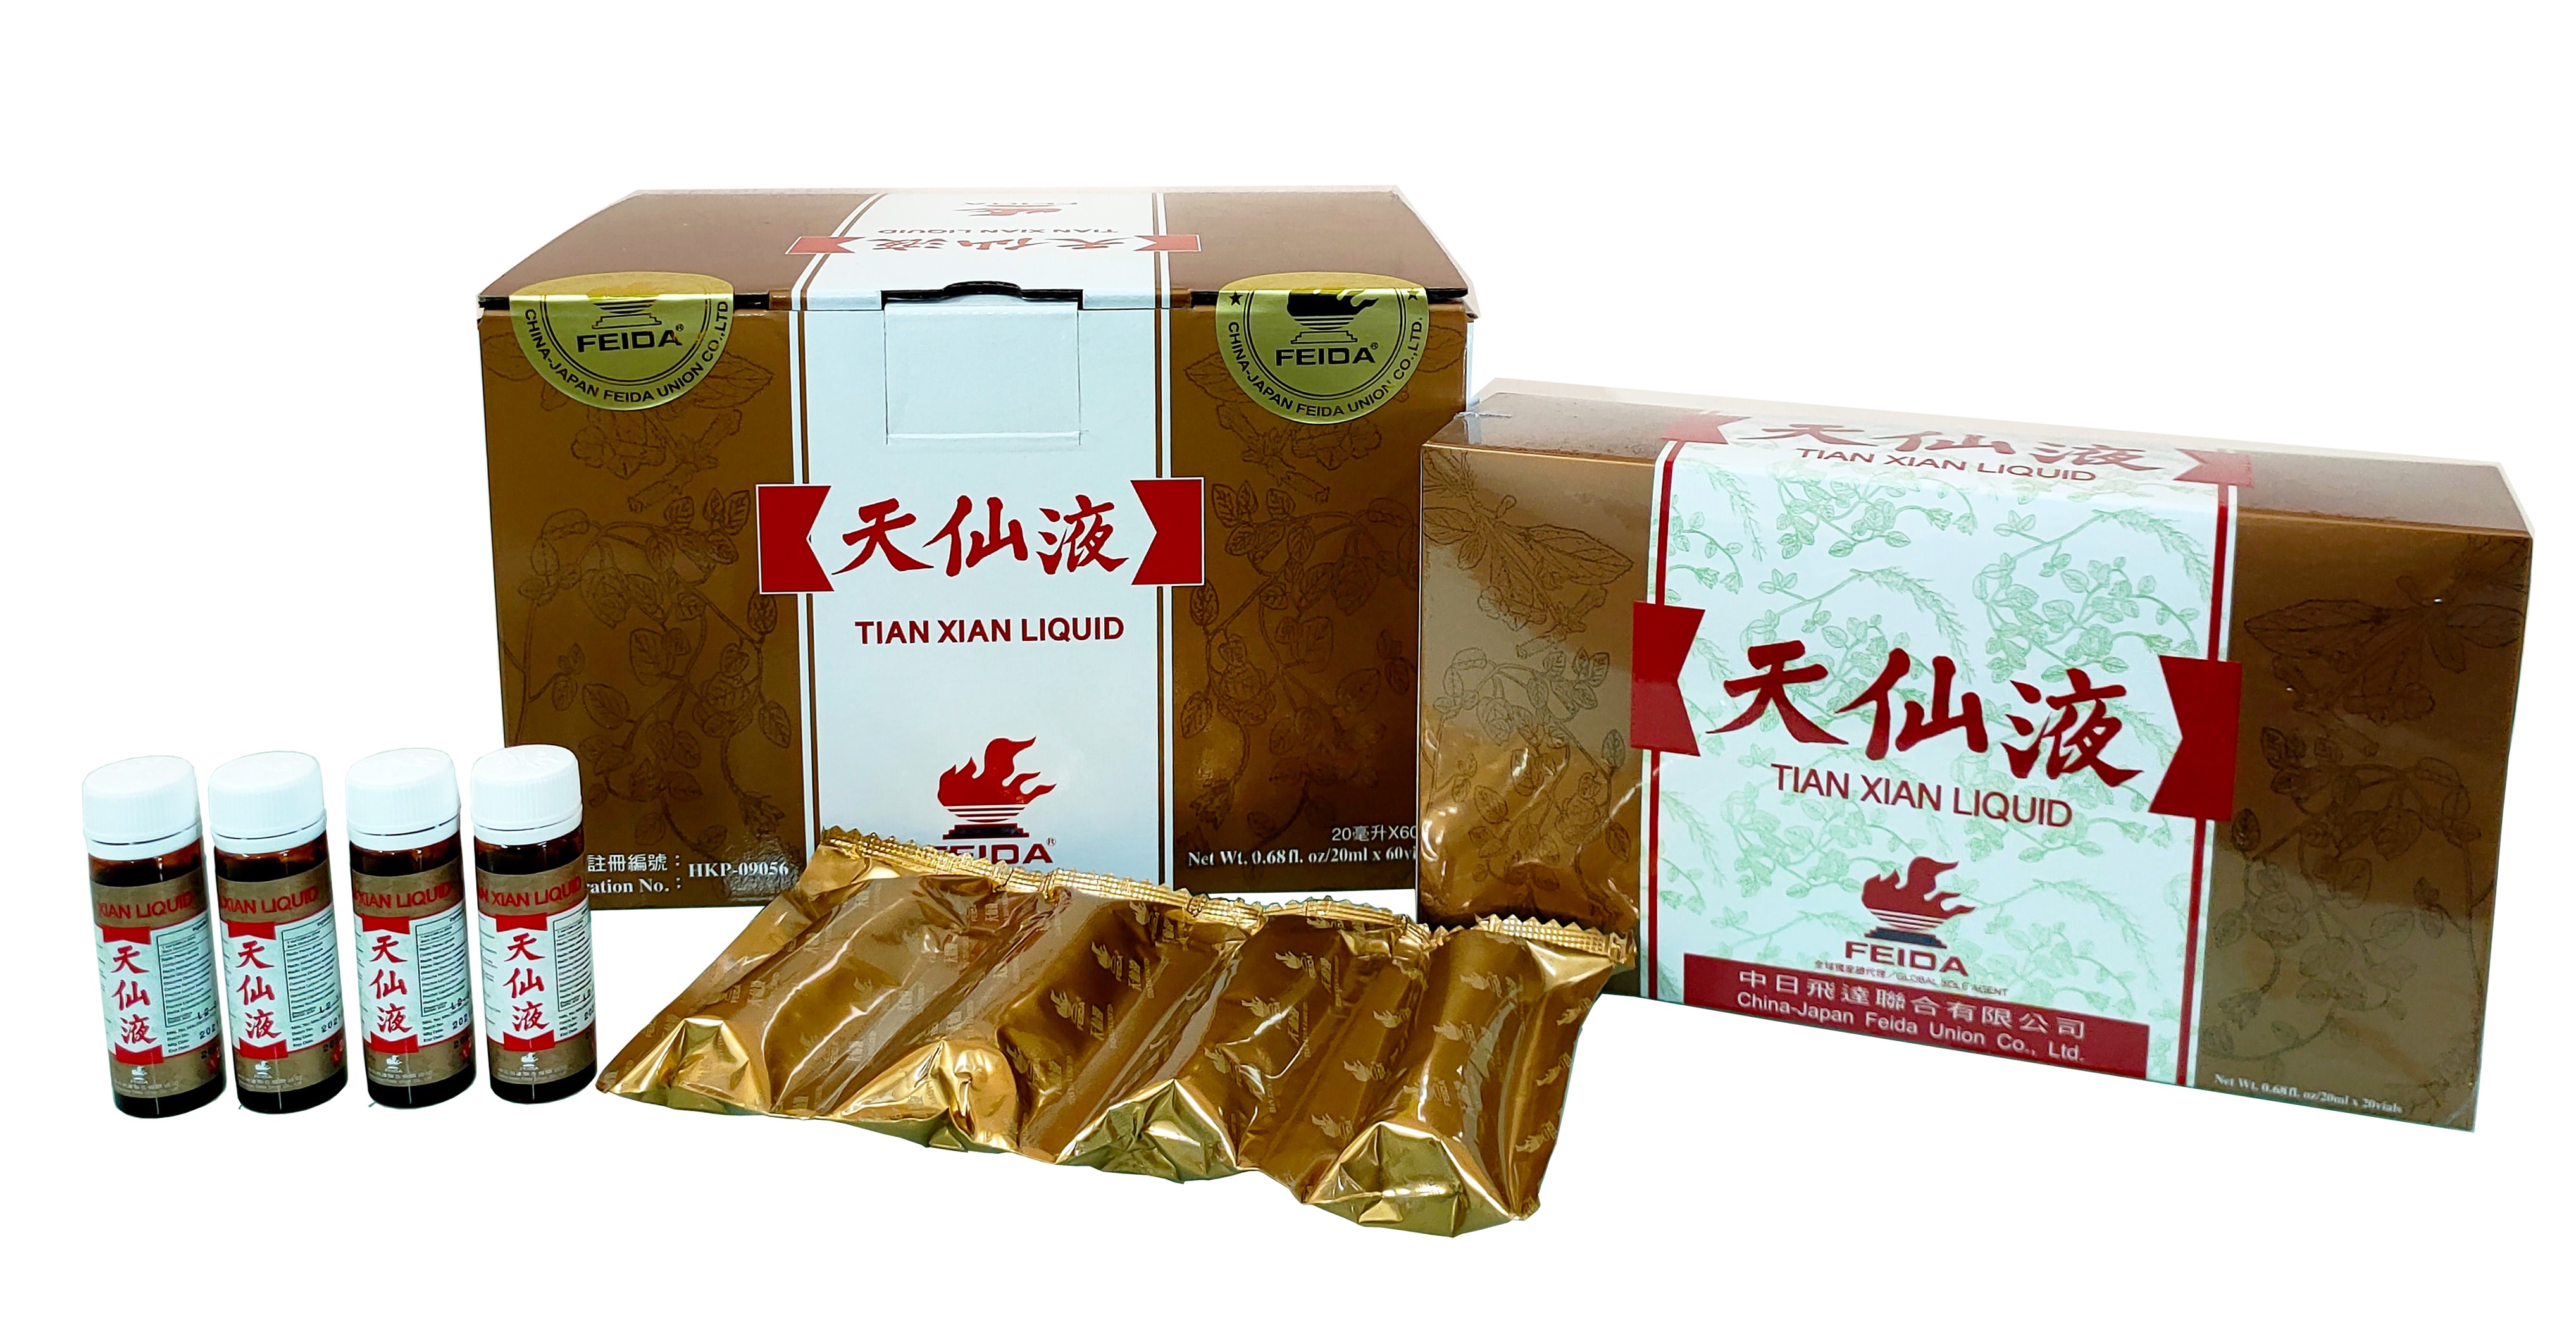 Notice: Tian Xian Liquid - Golden Packaging